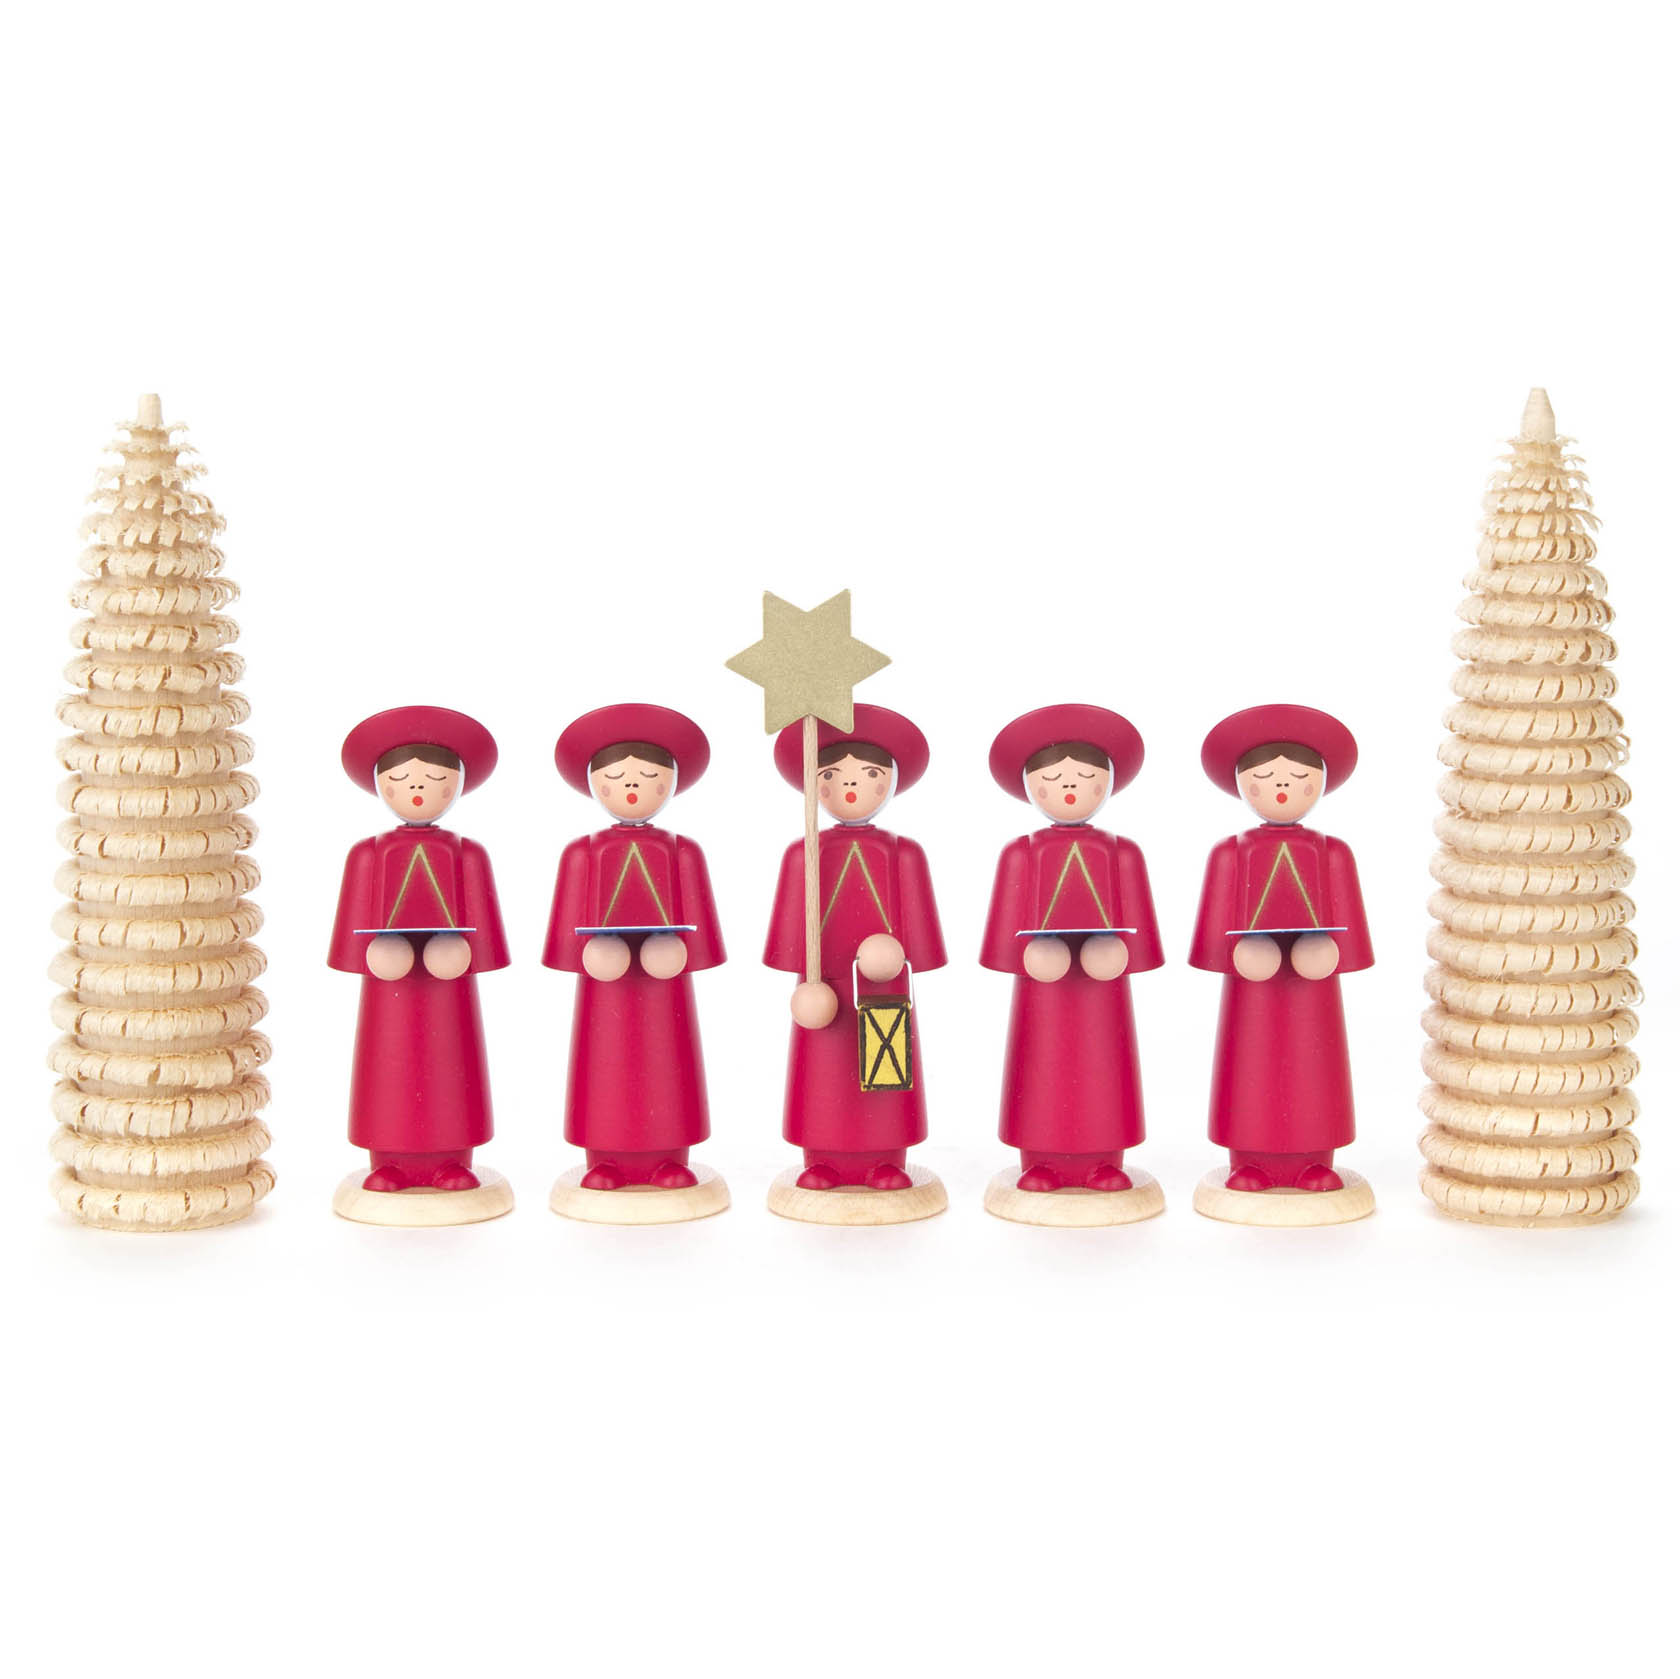 Kurrendefiguren rot mit Ringelbäumchen (7) im Dregeno Online Shop günstig kaufen